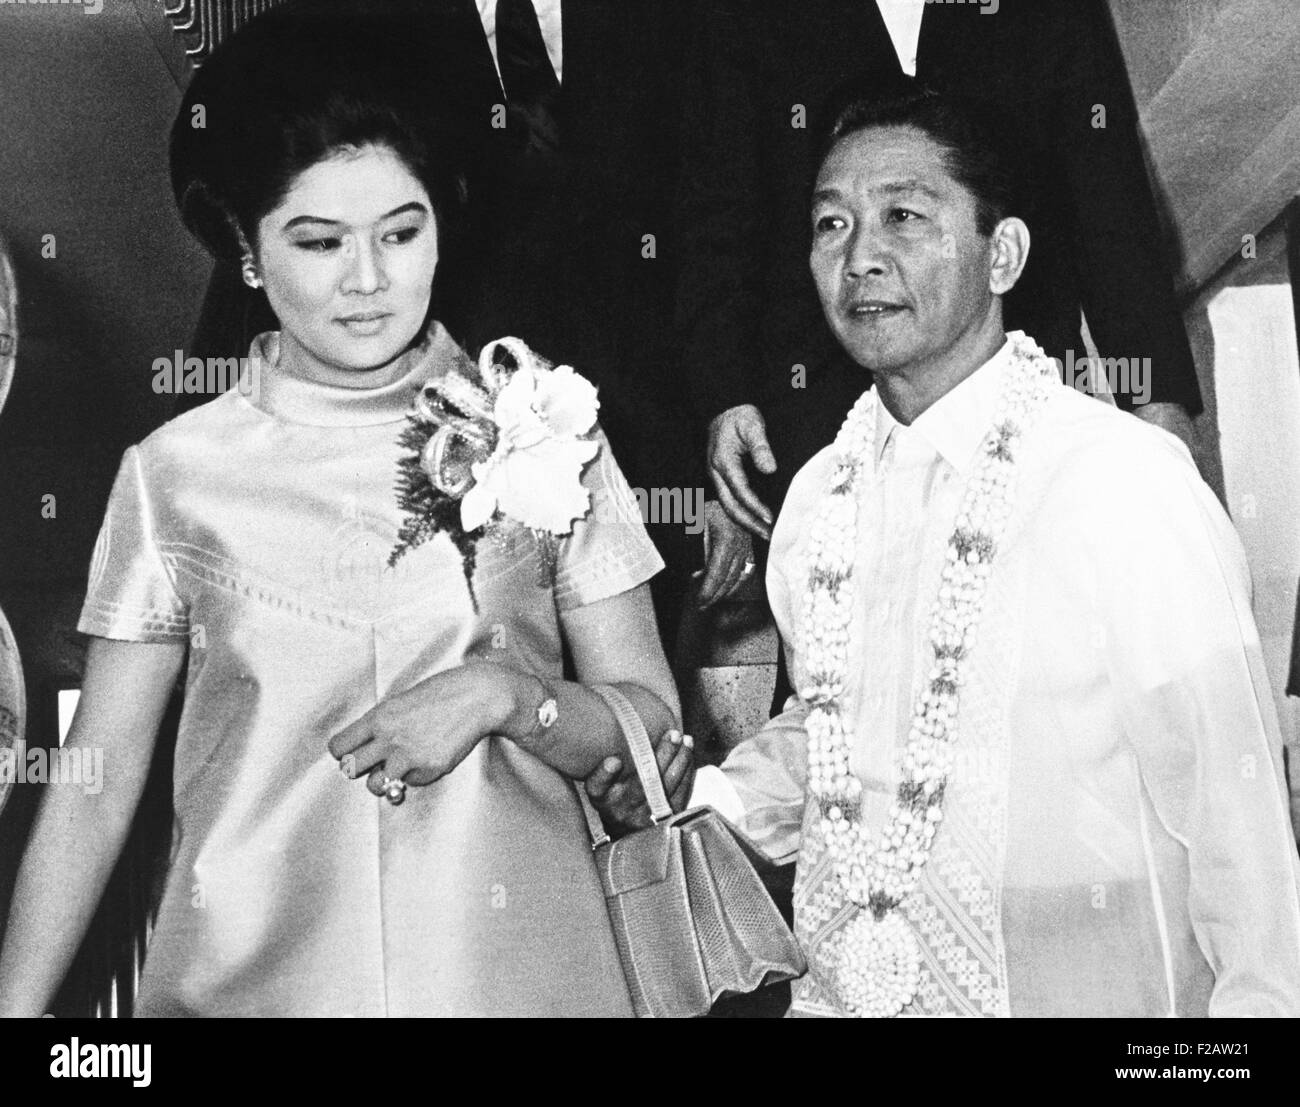 El Presidente de Filipinas Ferdinand Marcos y su esposa Imelda Romualcez en marcos. El 15 de abril de 1969. Él gobernó como dictador después de imponer la ley marcial en 1972-1981, lo que justificó por supuestas amenazas de insurgentes comunistas y musulmanes. (CSU 2015 11 1486) Foto de stock